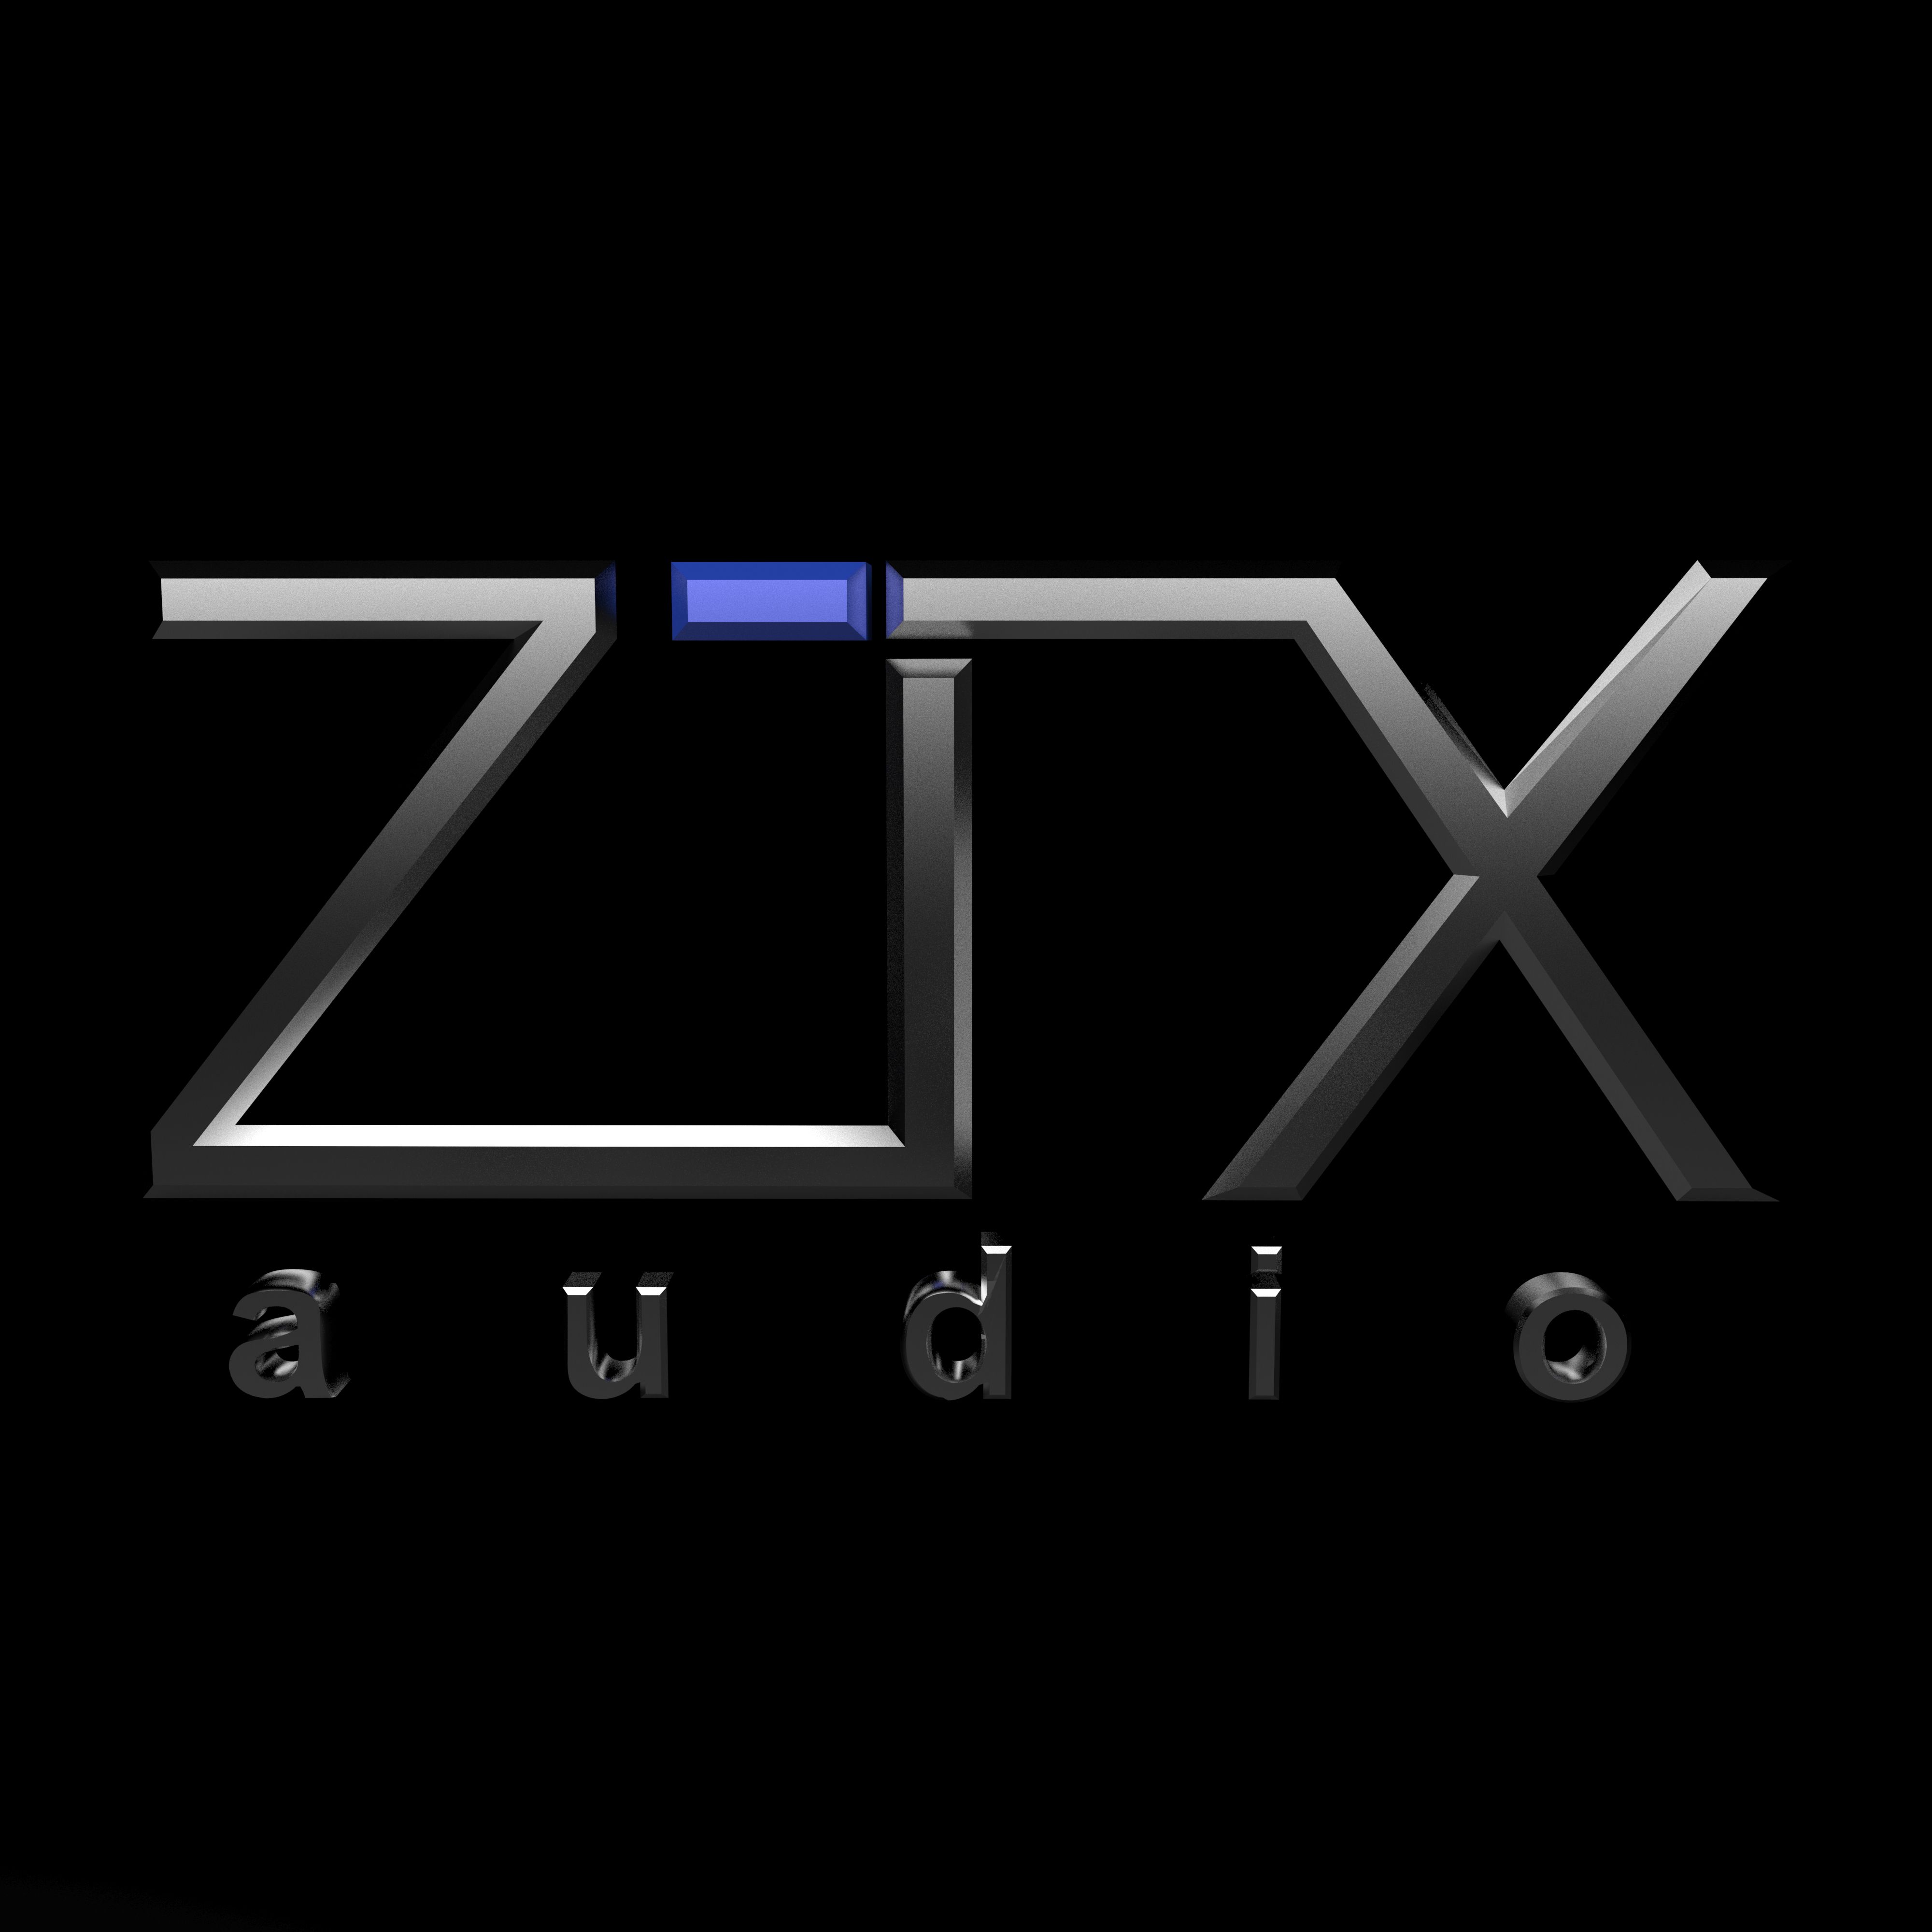 ZTX audio